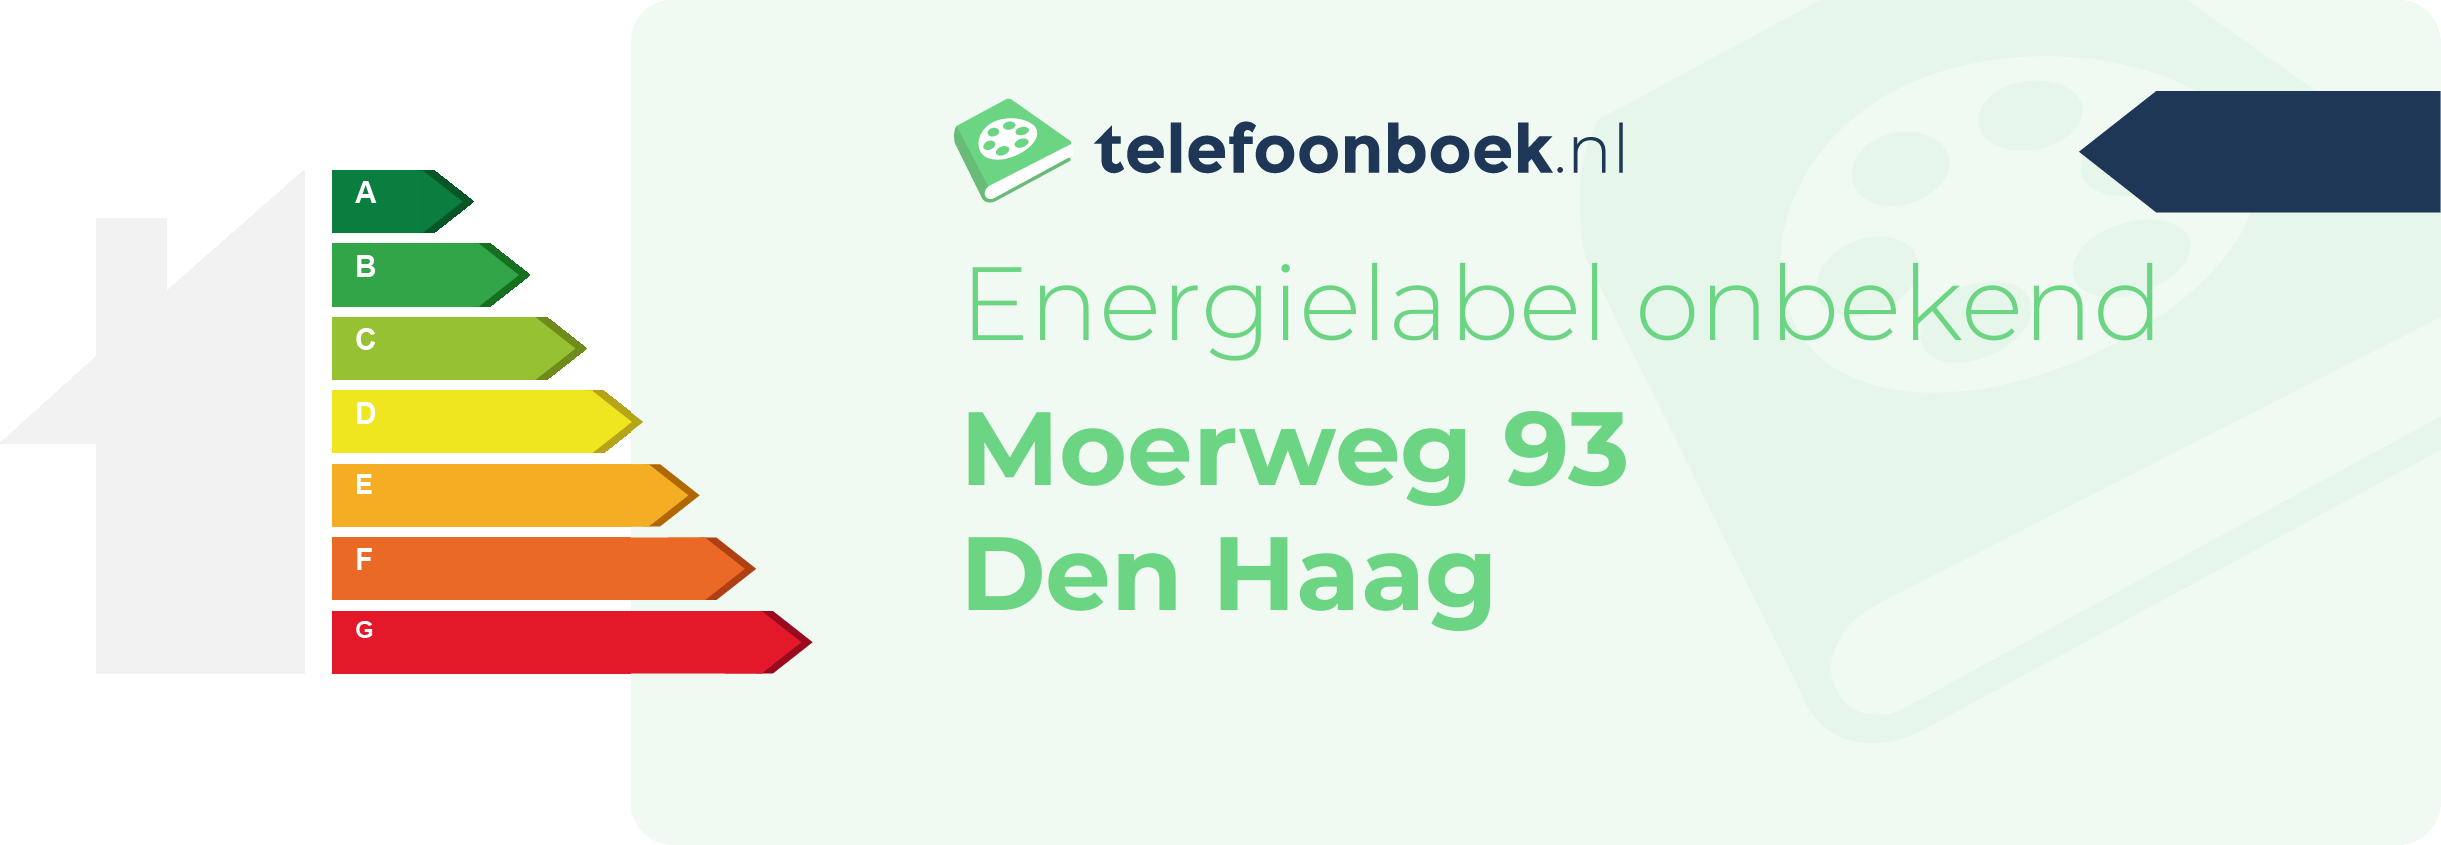 Energielabel Moerweg 93 Den Haag